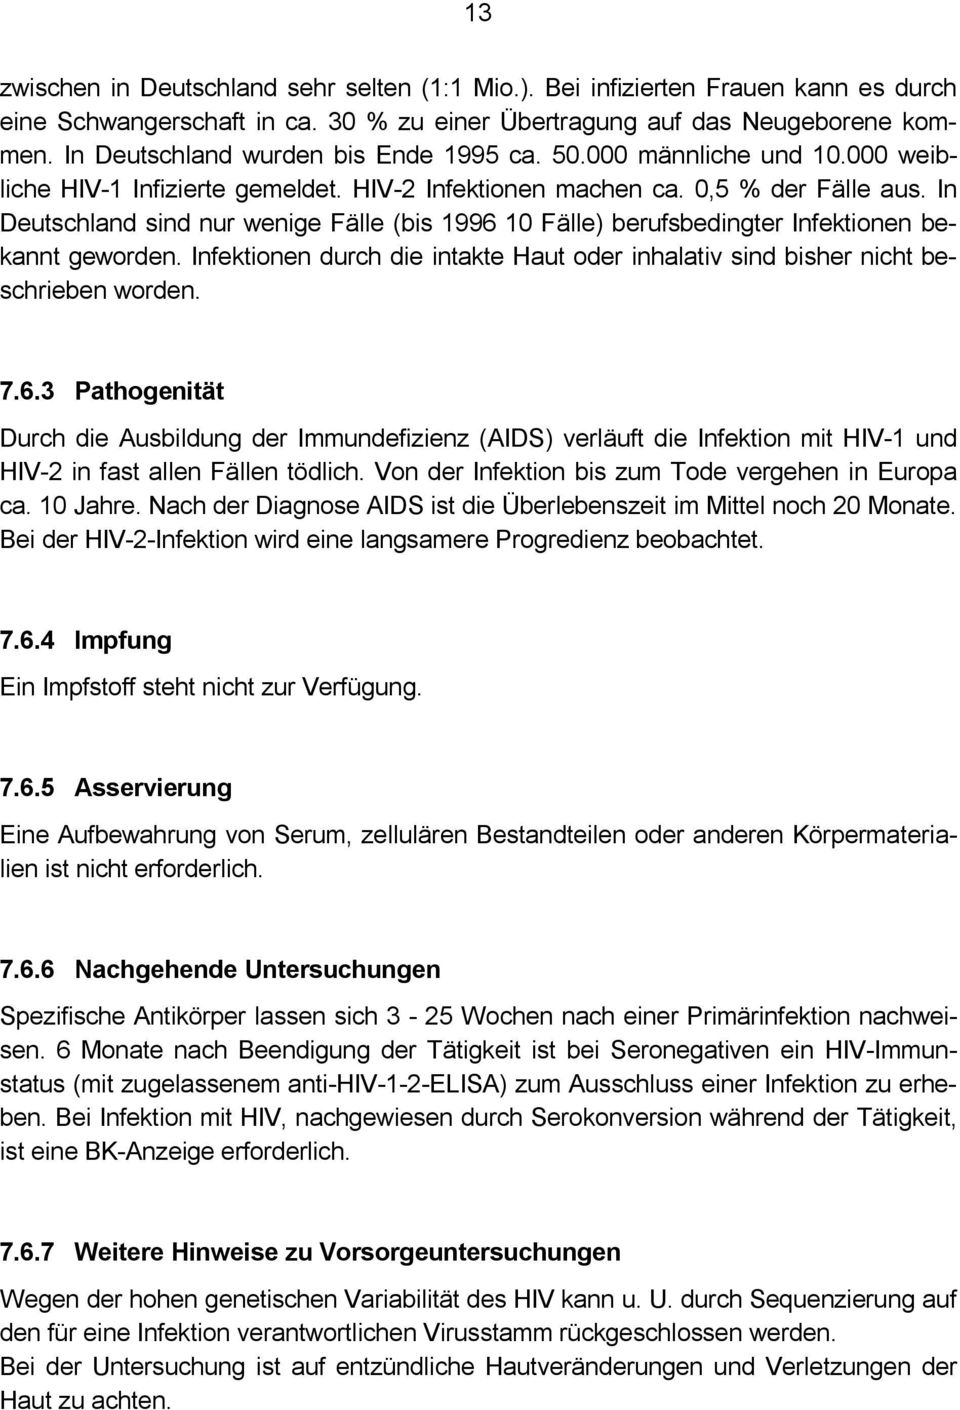 In Deutschland sind nur wenige Fälle (bis 1996 10 Fälle) berufsbedingter Infektionen bekannt geworden. Infektionen durch die intakte Haut oder inhalativ sind bisher nicht beschrieben worden. 7.6.3 Durch die Ausbildung der Immundefizienz (AIDS) verläuft die Infektion mit HIV-1 und HIV-2 in fast allen Fällen tödlich.